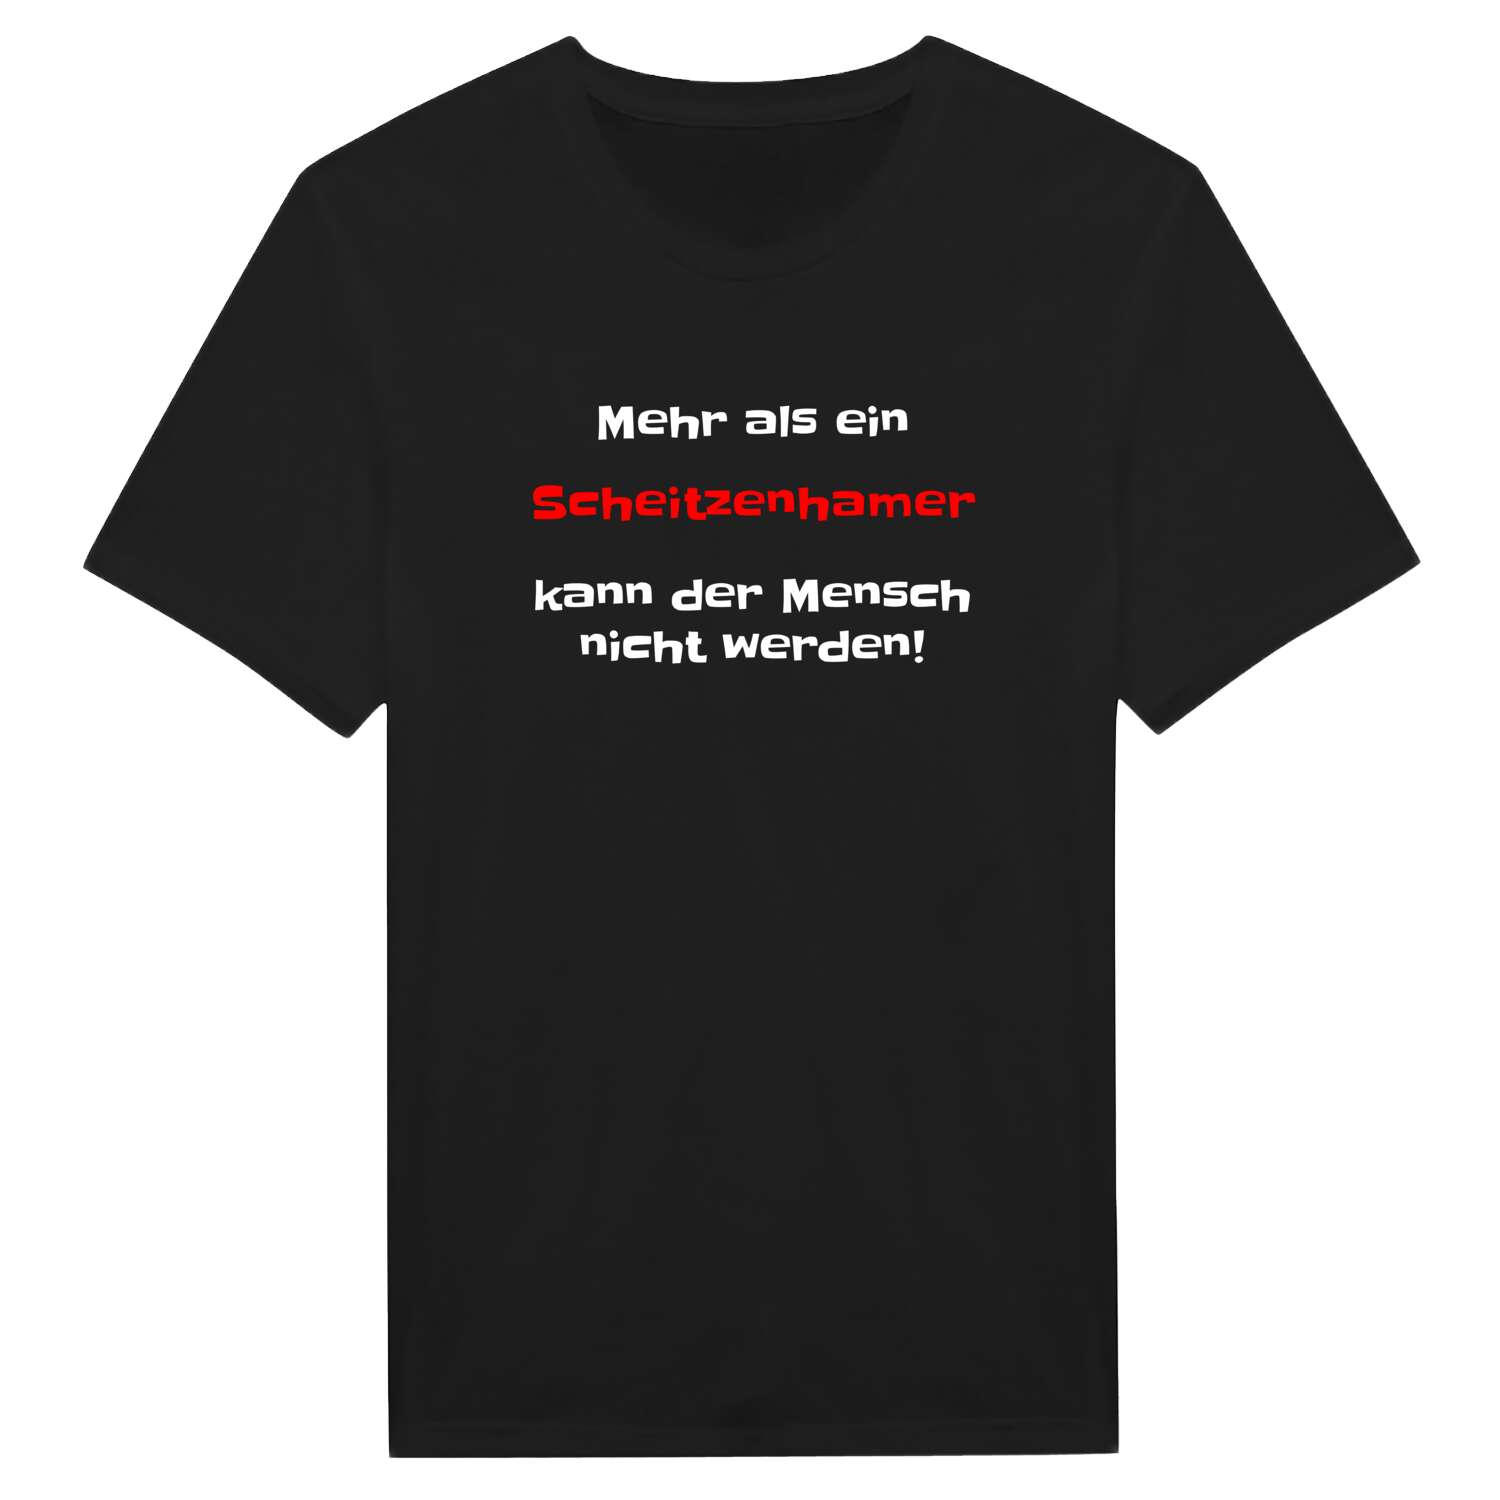 Scheitzenham T-Shirt »Mehr als ein«